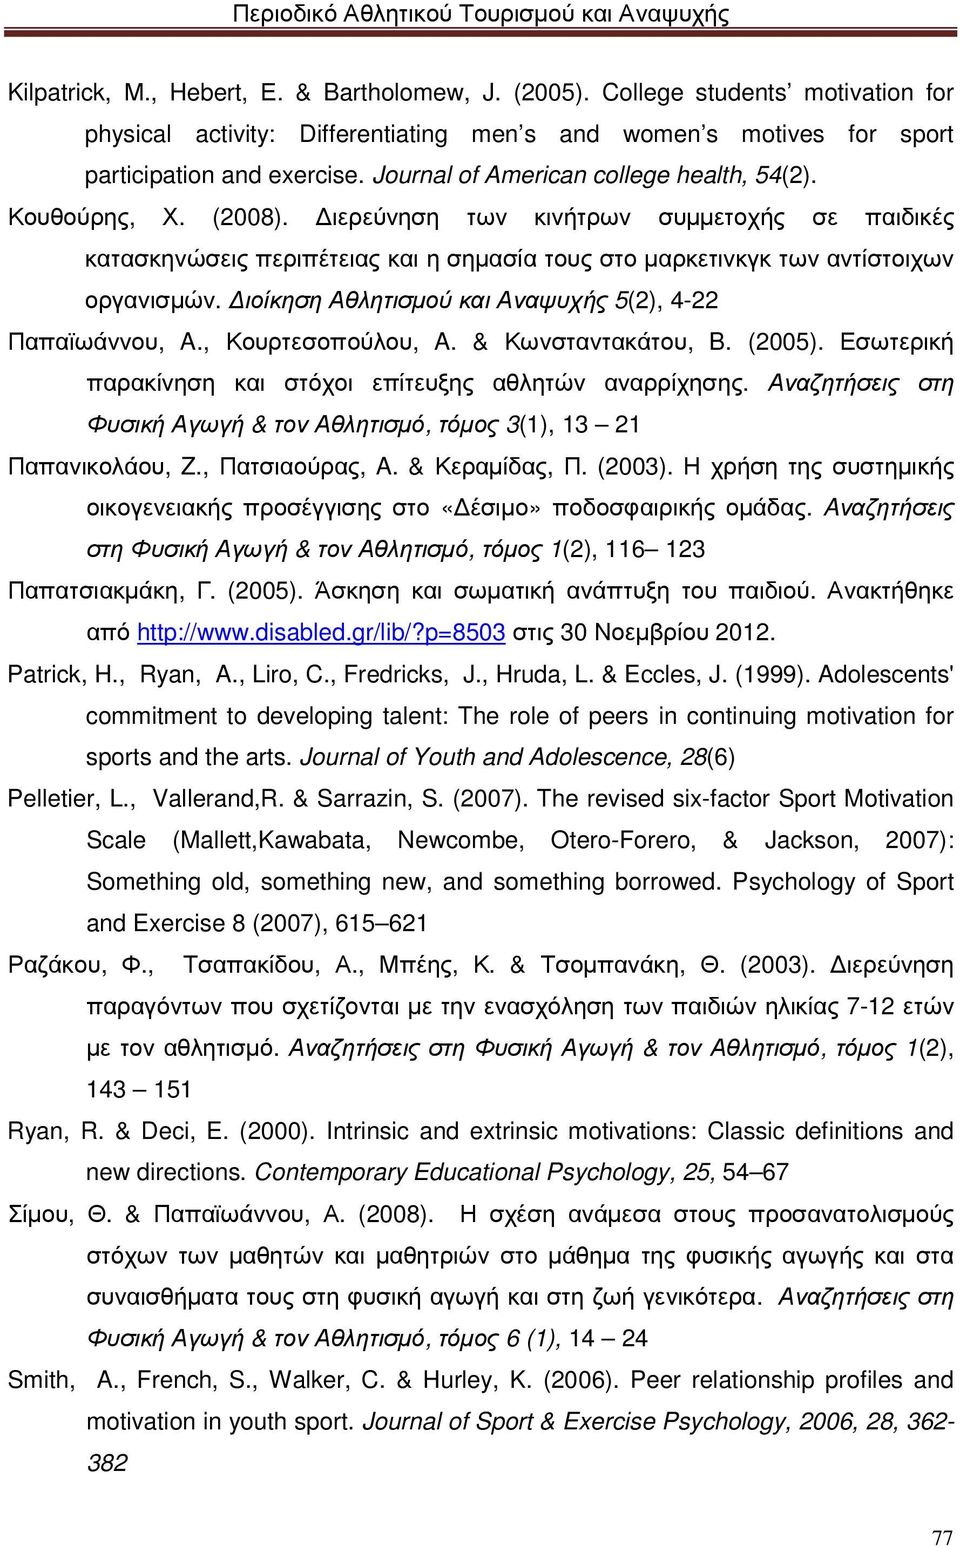 ιοίκηση Αθλητισµού και Αναψυχής 5(2), 4-22 Παπαϊωάννου, A., Κουρτεσοπούλου, A. & Κωνσταντακάτου, B. (2005). Εσωτερική παρακίνηση και στόχοι επίτευξης αθλητών αναρρίχησης.